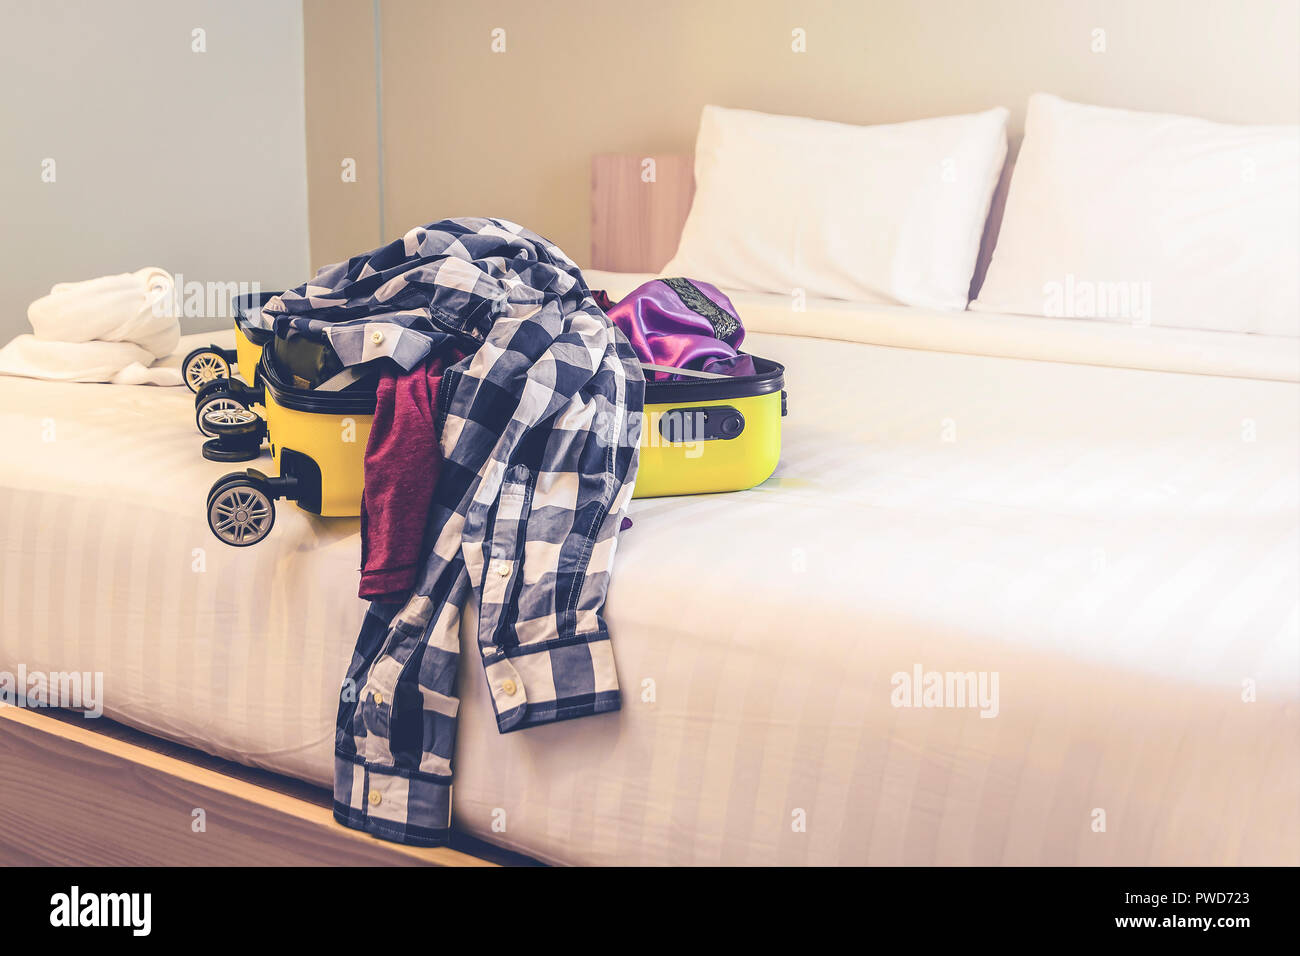 Open Travel maleta con ropa y accesorios de cama Foto de stock